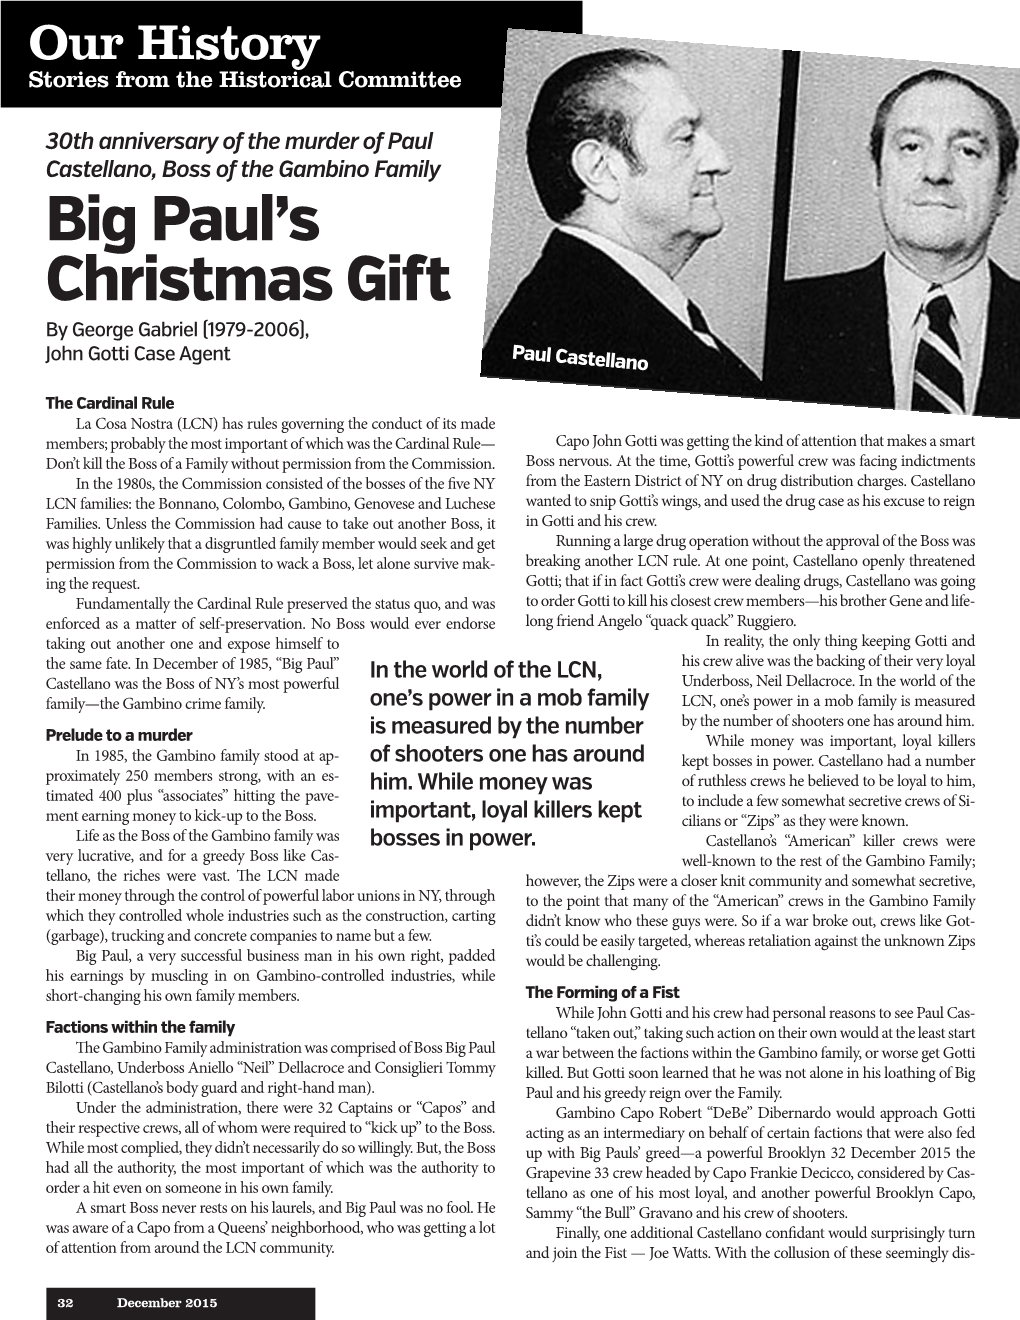 Big Paul's Christmas Gift